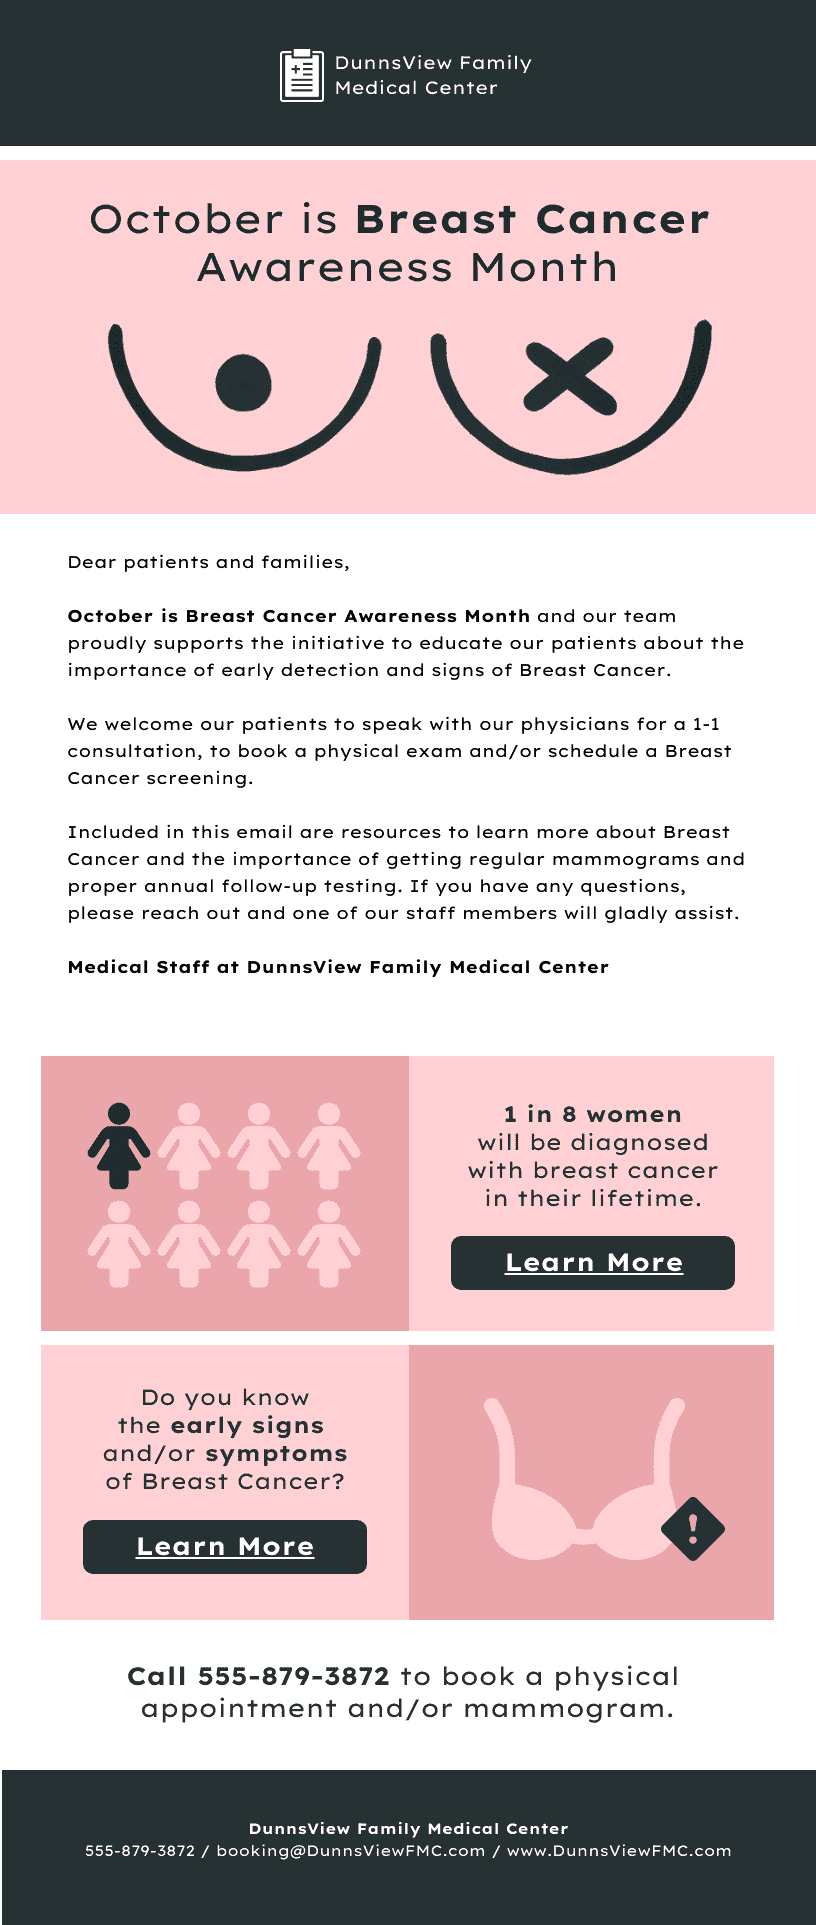 Ide buletin bulan Oktober: Kesadaran akan kanker payudara